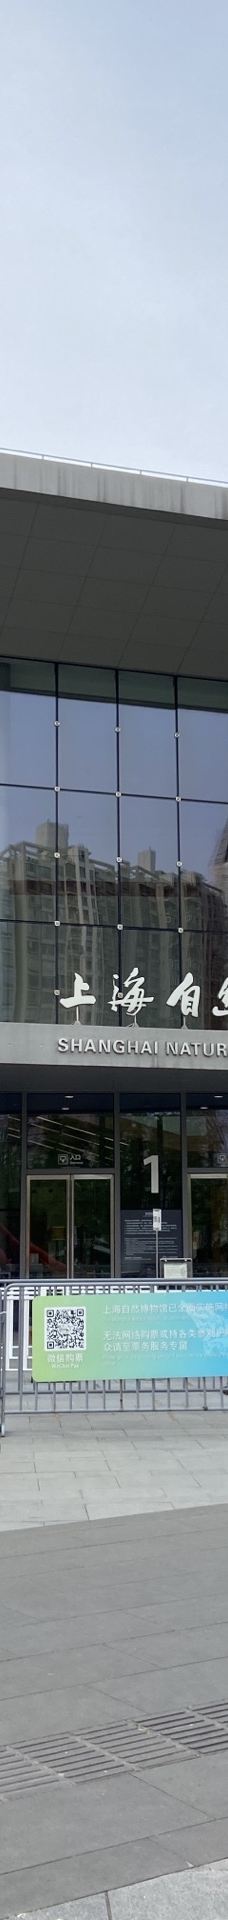 上海自然博物馆-上海